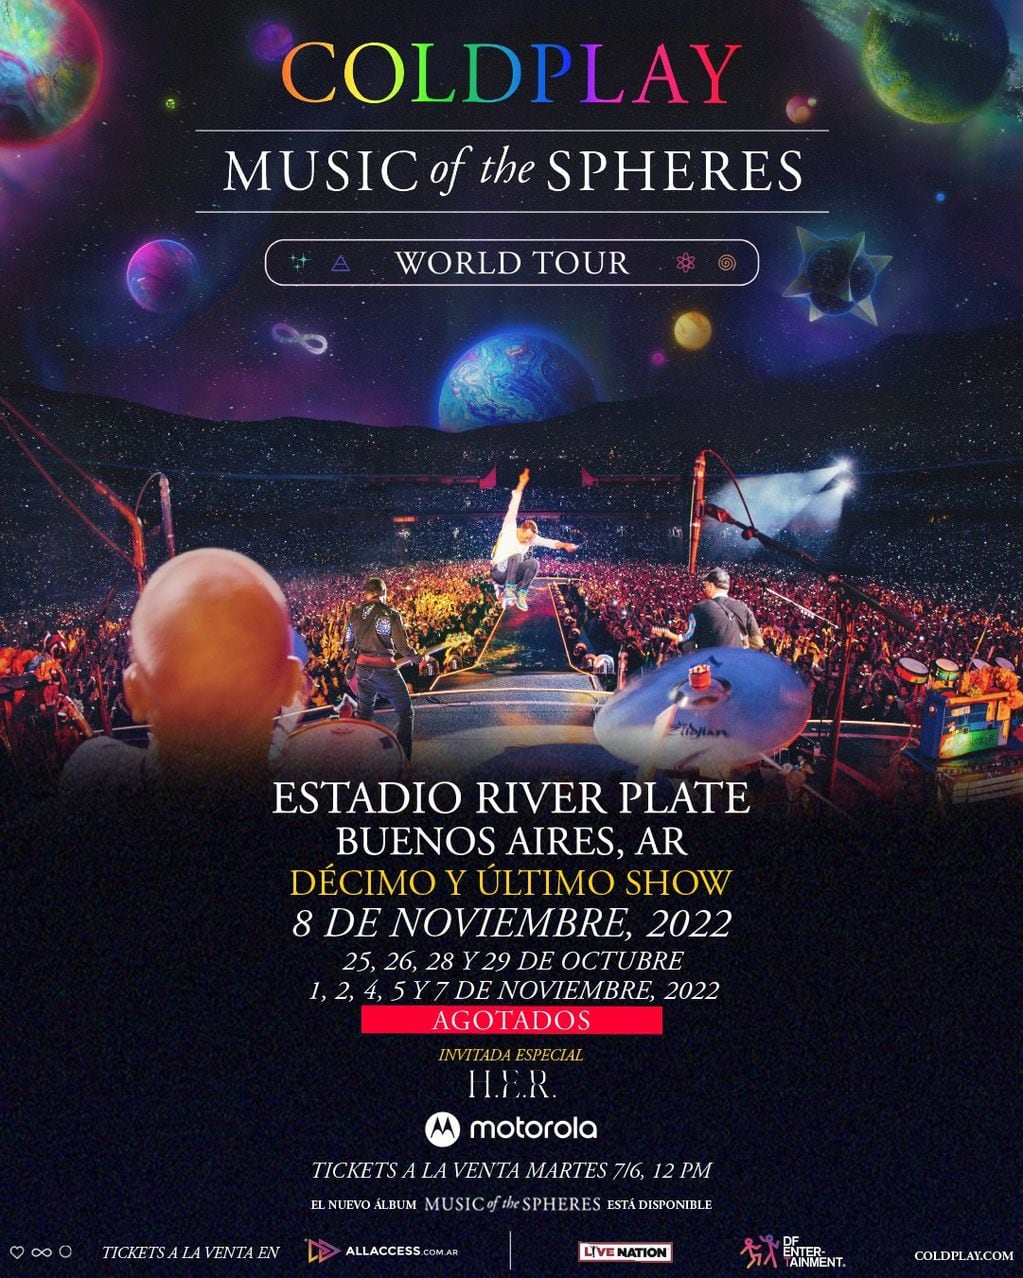 Coldplay, décimo y último show en Argentina 2022: 8 de noviembre (DF Entertainment)